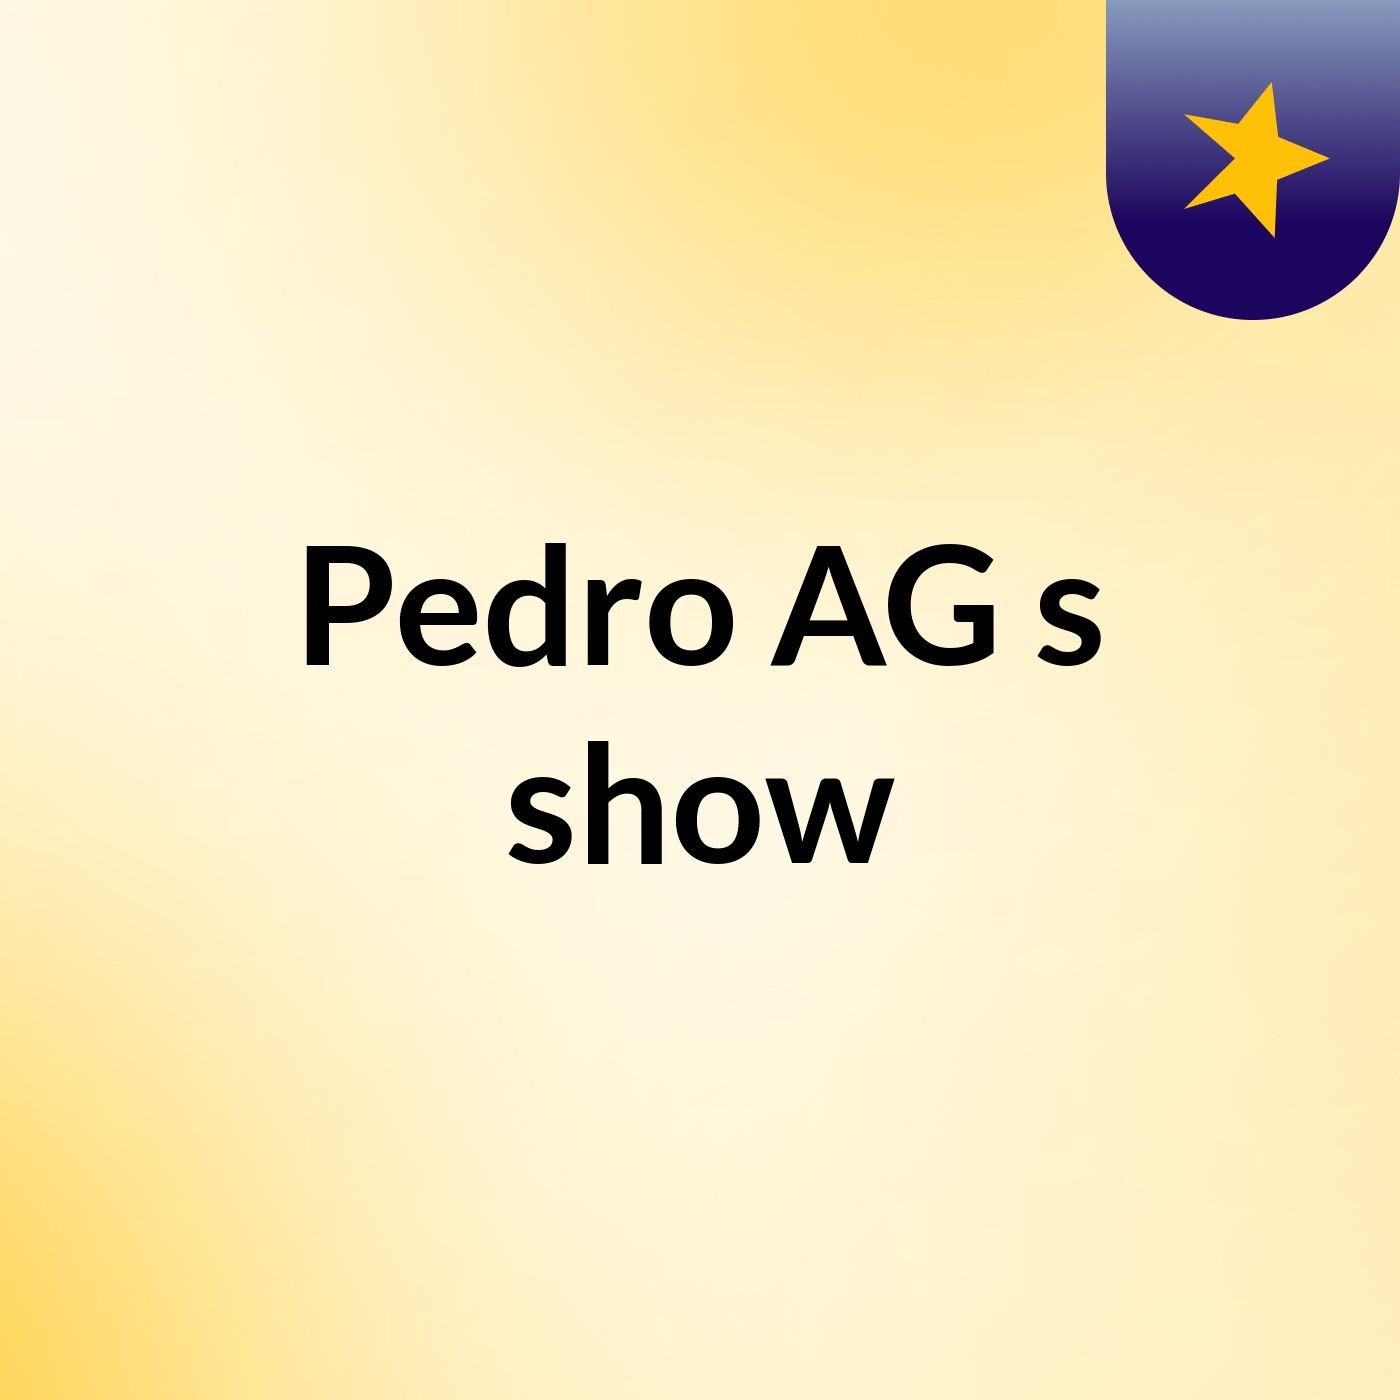 Pedro AG's show